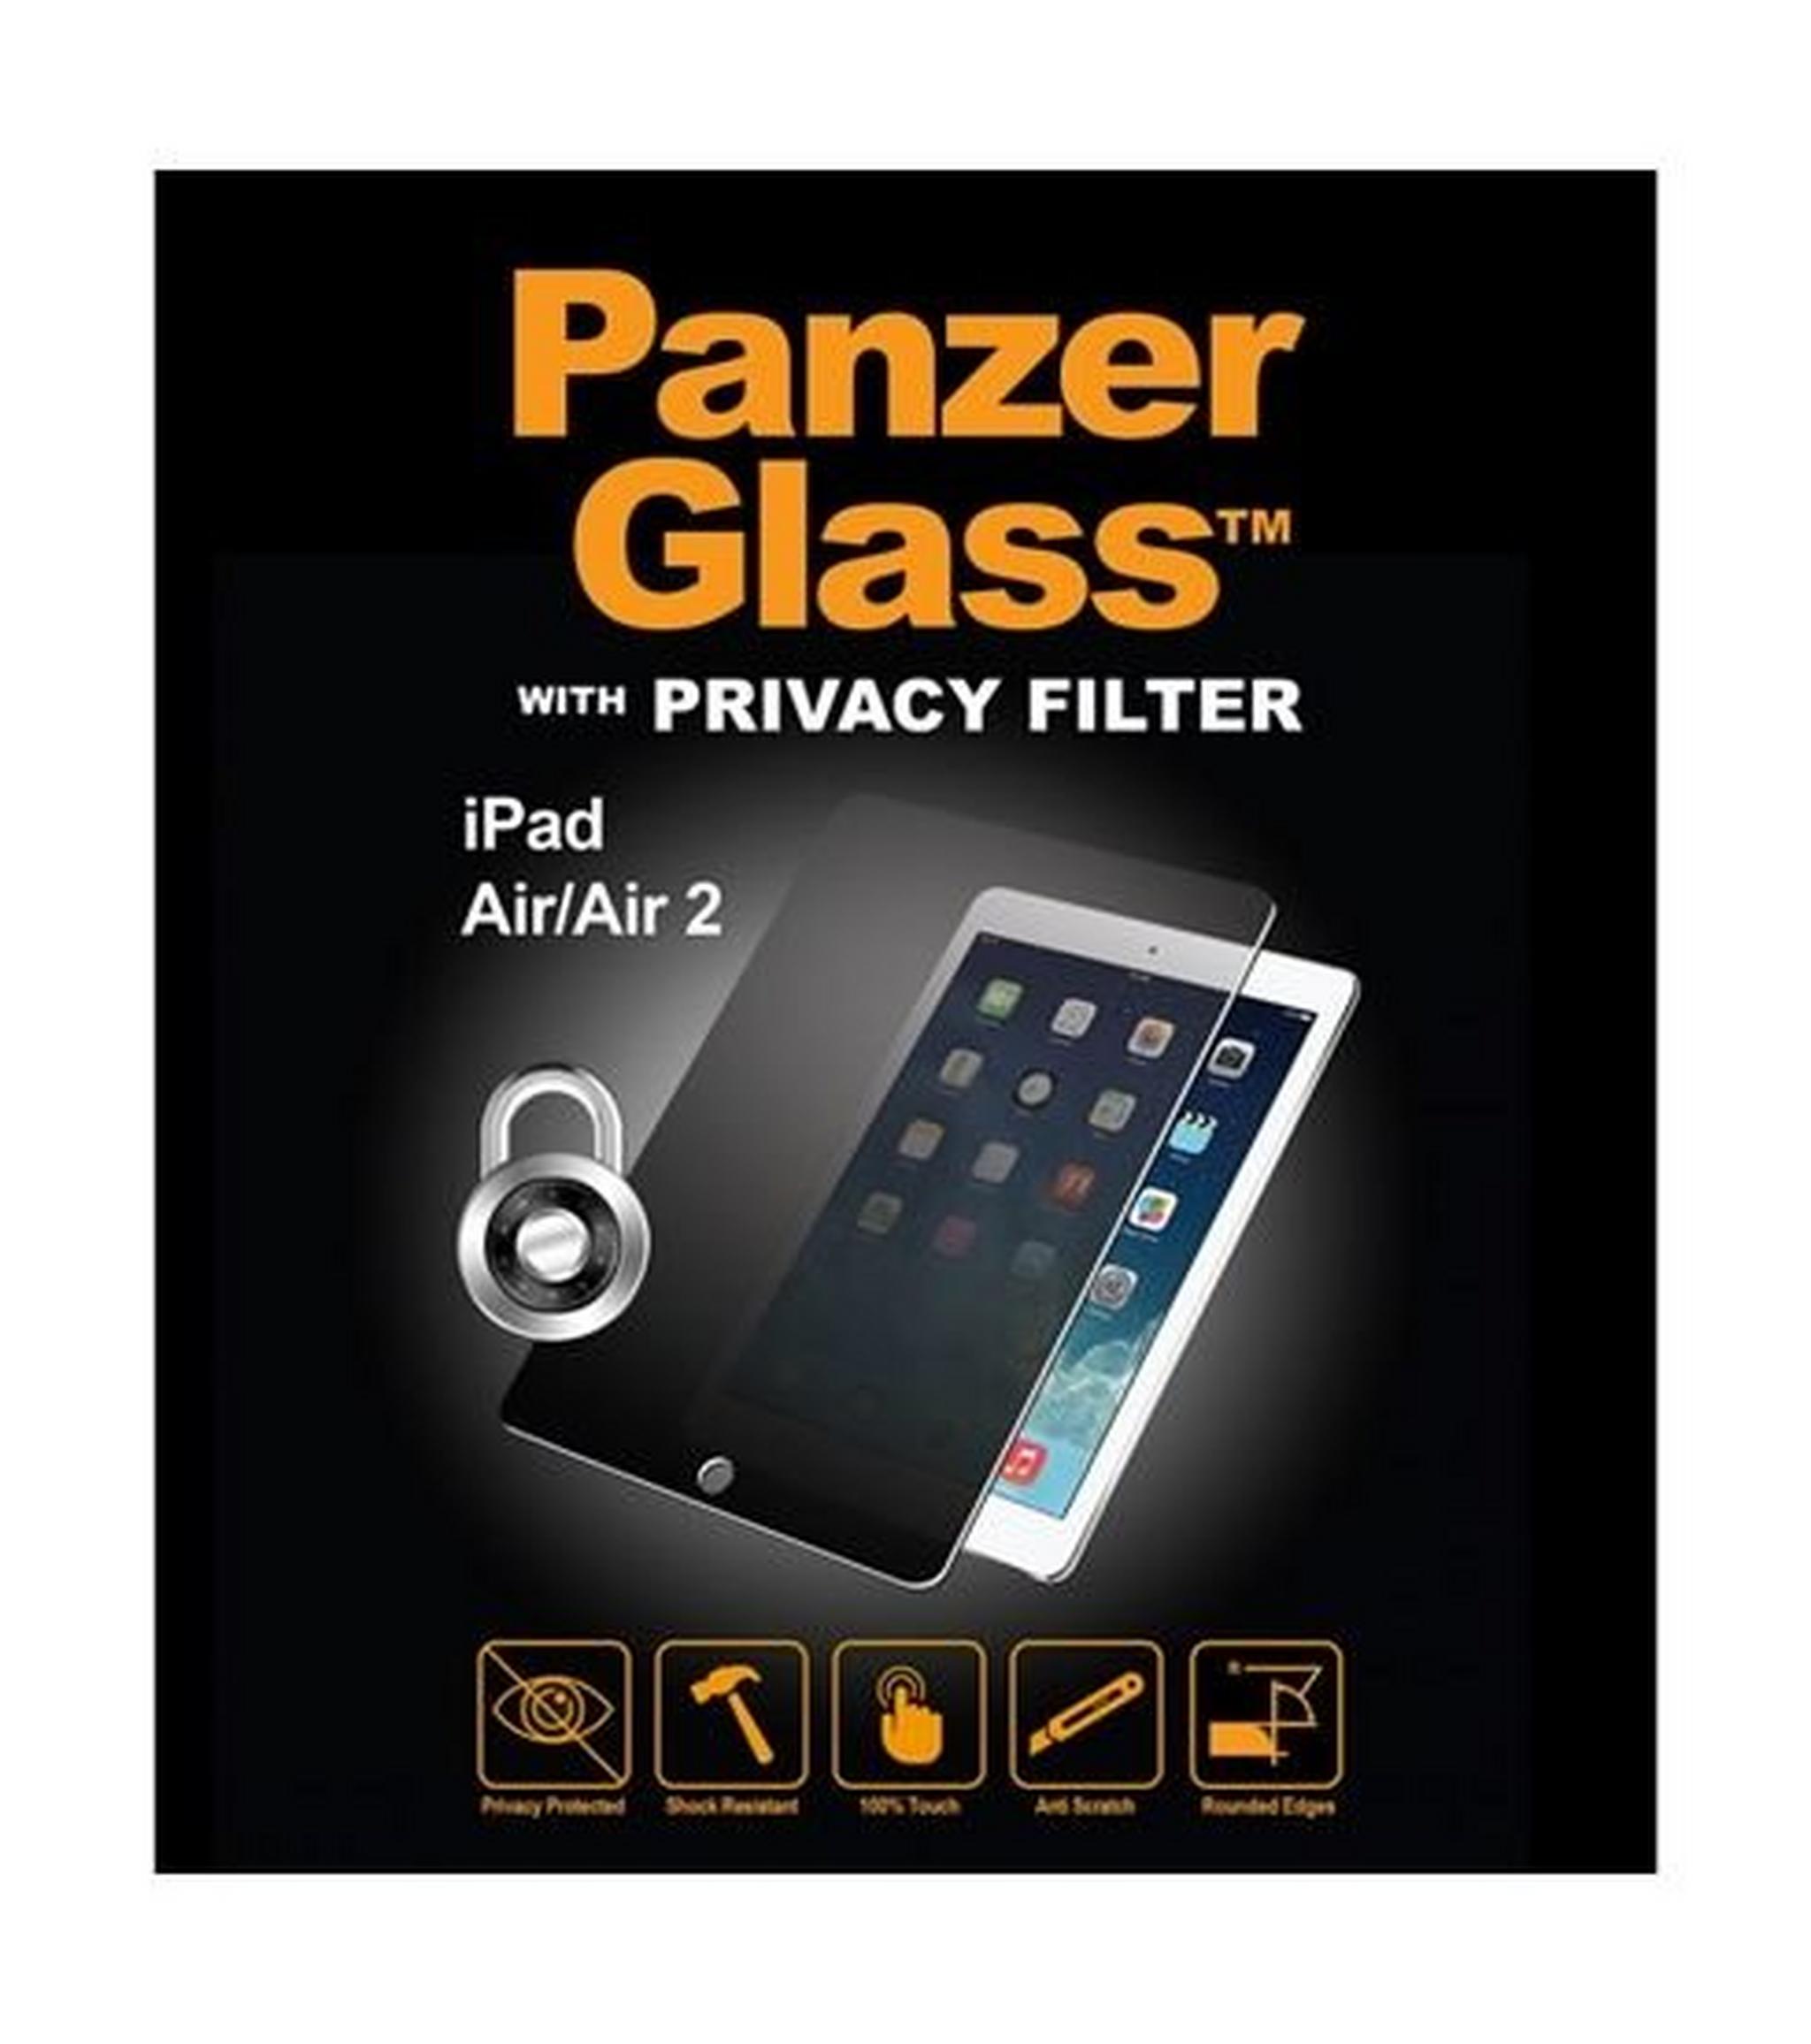 واقي الشاشة الزجاجي الأصلي مع فلتر الخصوصية لآيباد إير من بانزر - شفاف (26548)